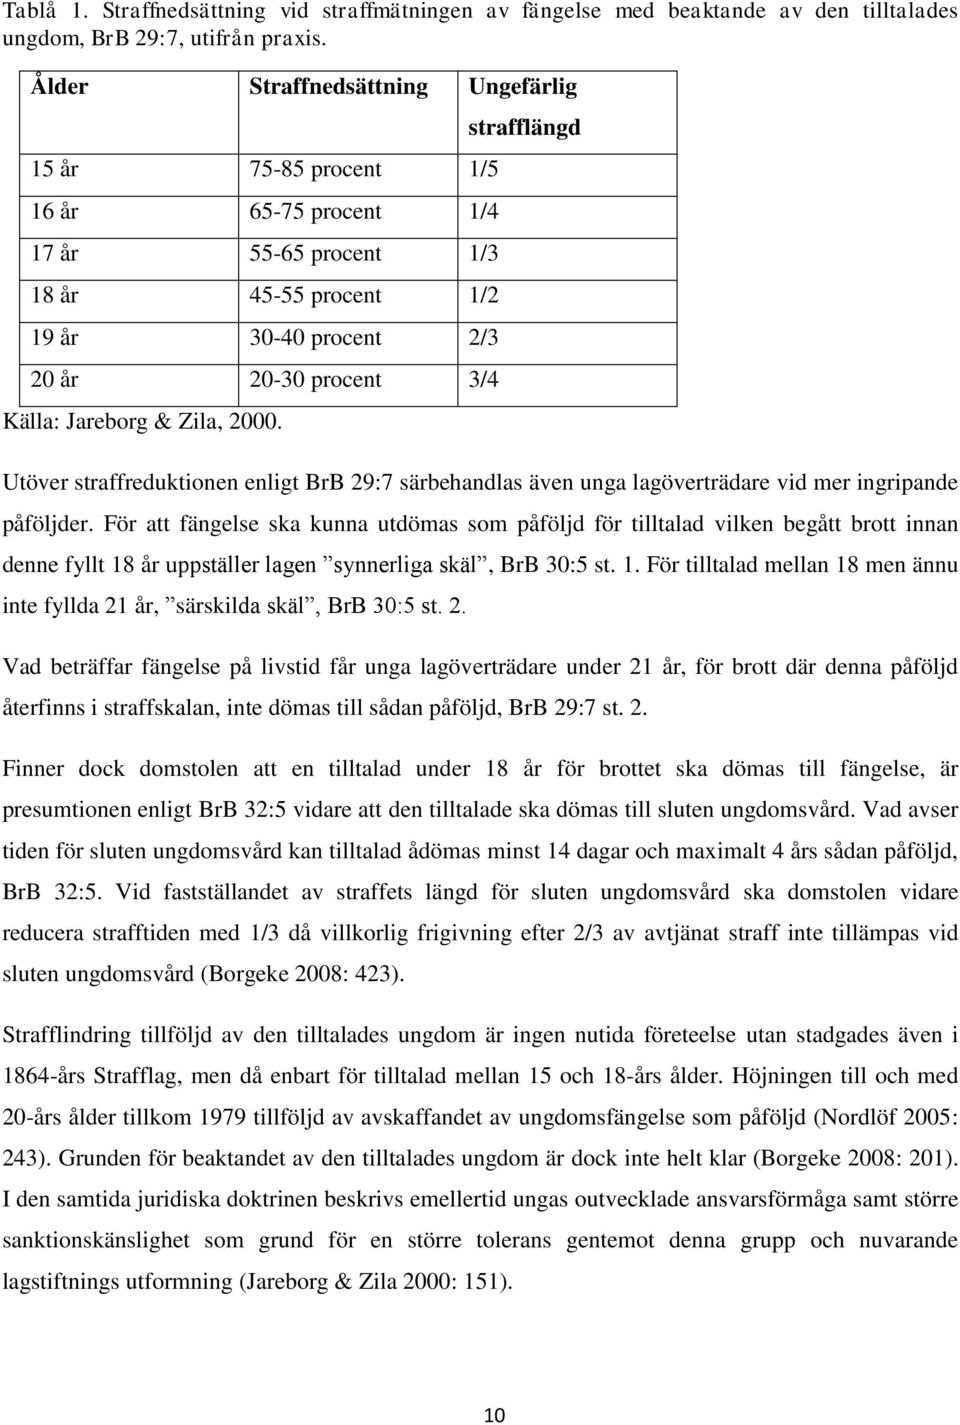 Zila, 2000. strafflängd Utöver straffreduktionen enligt BrB 29:7 särbehandlas även unga lagöverträdare vid mer ingripande påföljder.